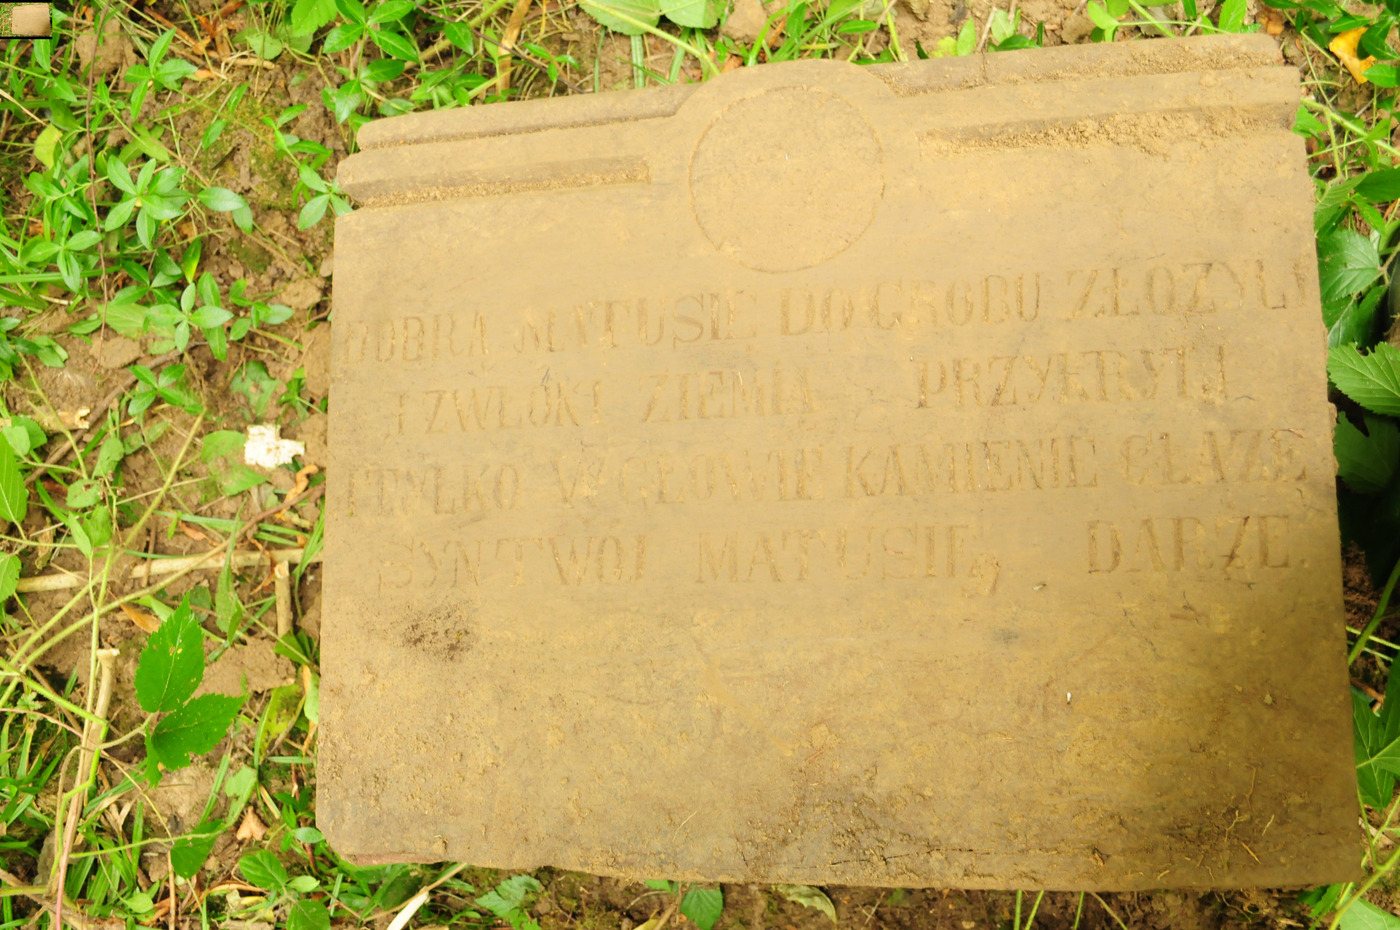 Tombstone of Józefa Poterałowicz Kamińska, cemetery in Puźniki, as of 2008.